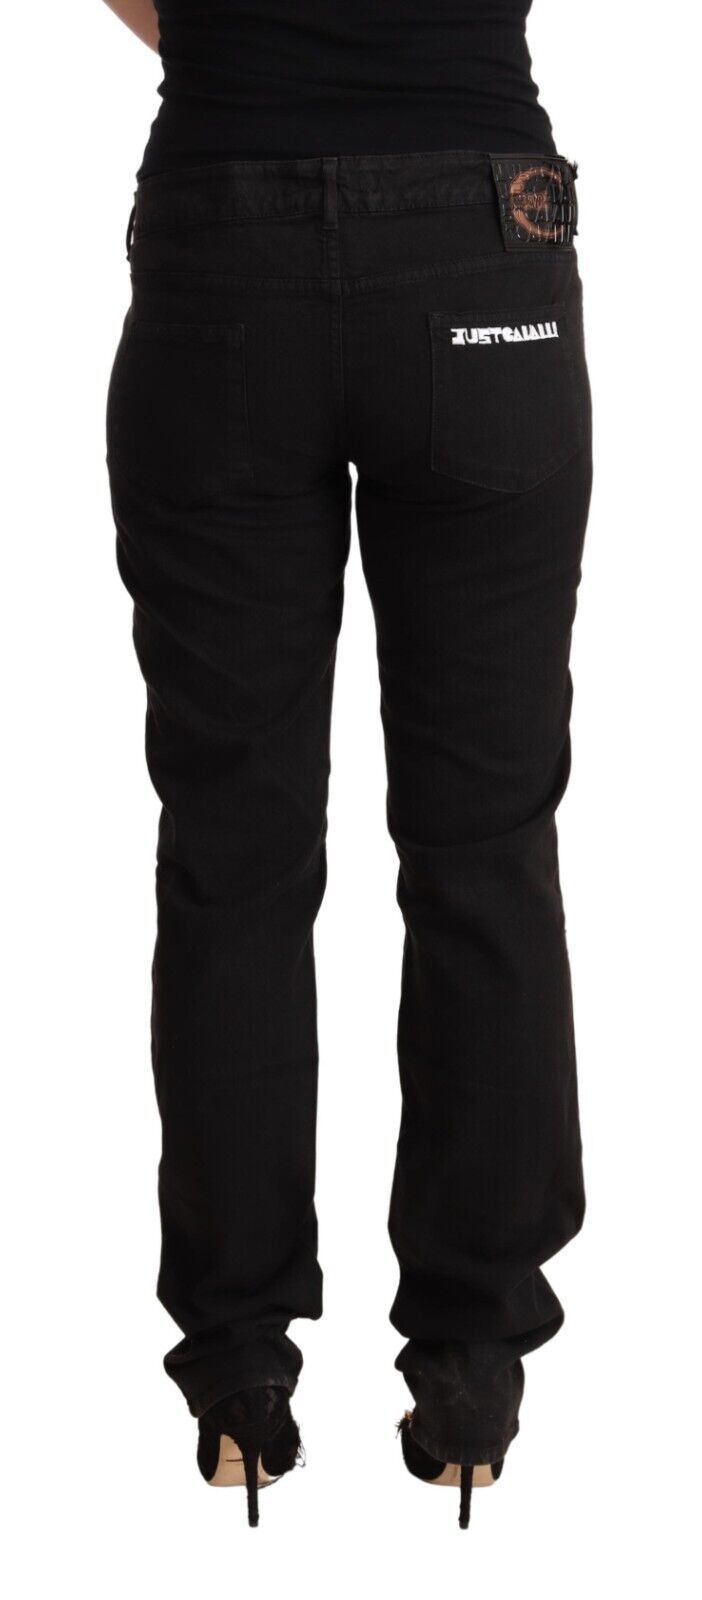 Just Cavalli Sleek Mid-Waist Slim Fit Black Jeans